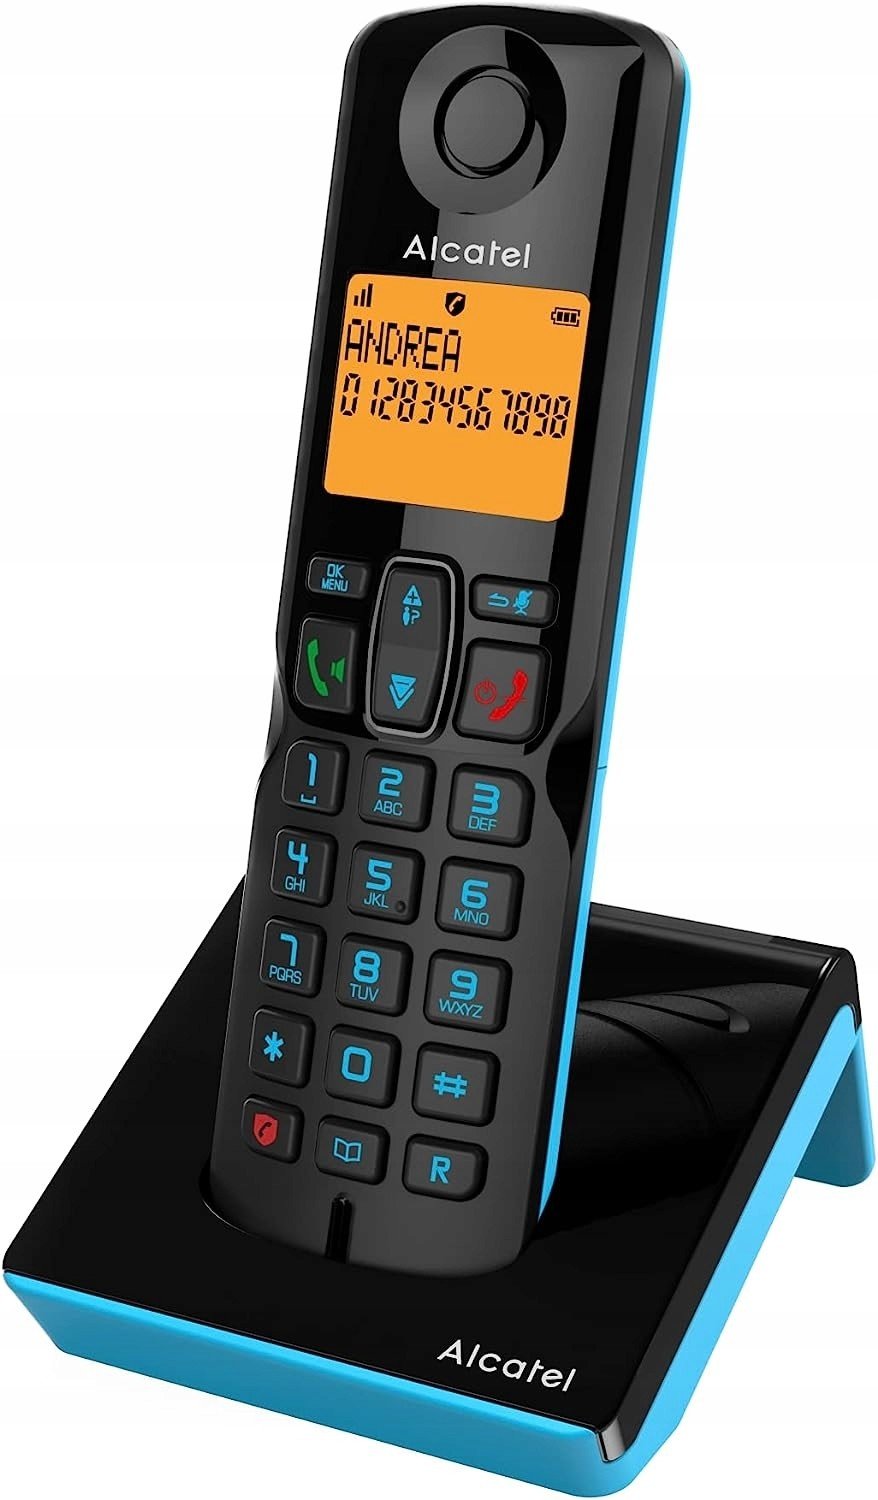 Alcatel bezdrátový telefon S280